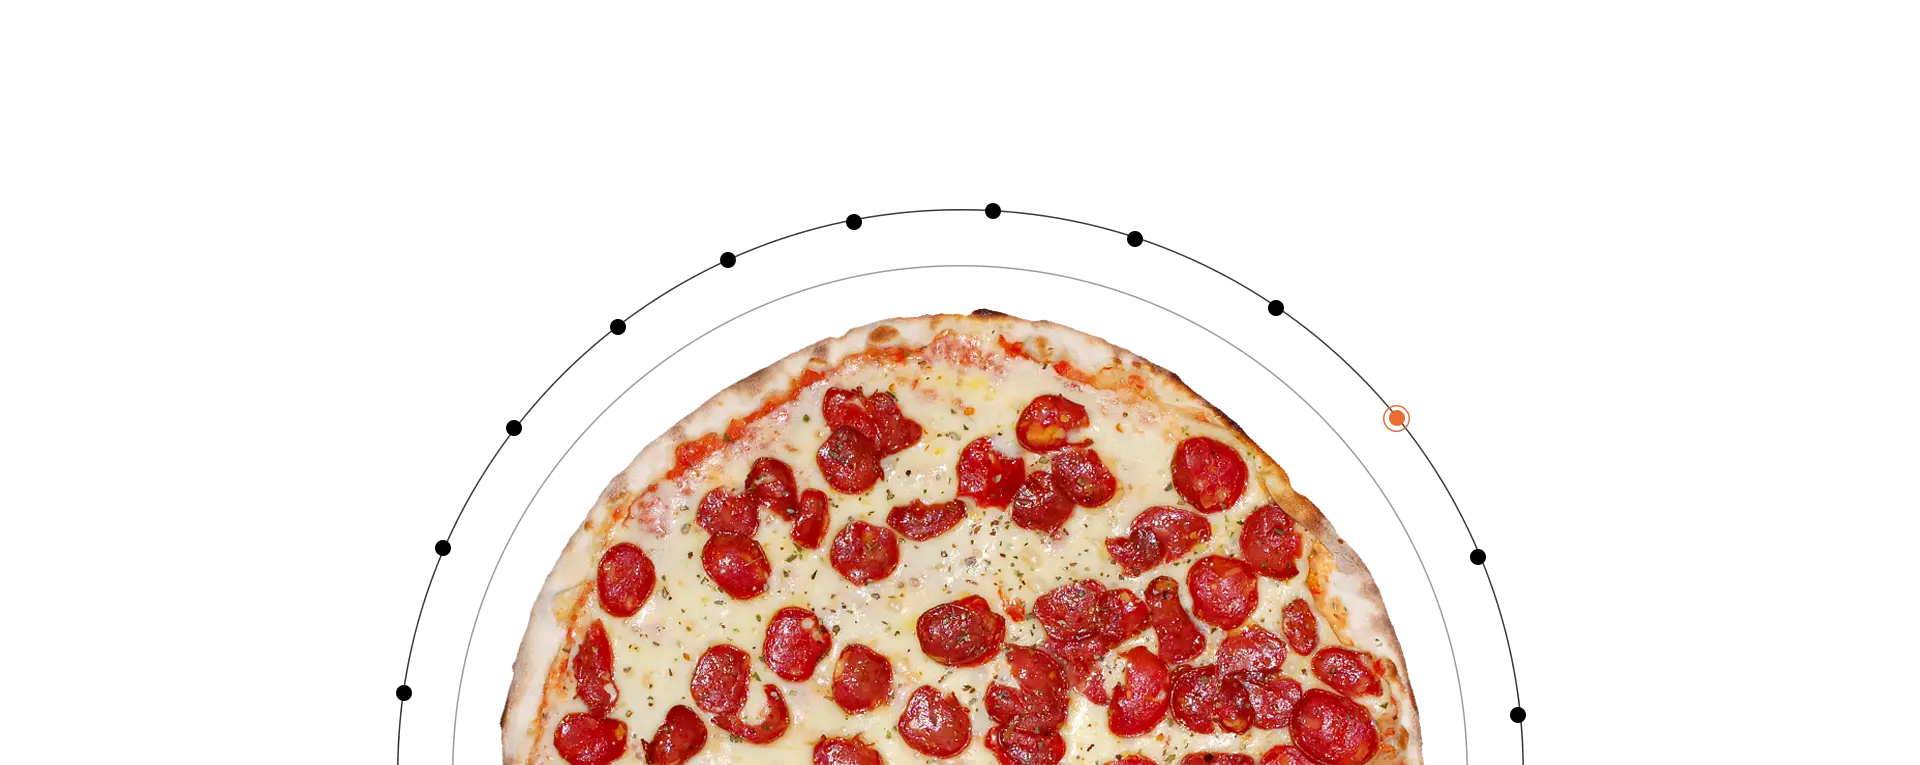 elipse_pizza-buenos-aires.webp